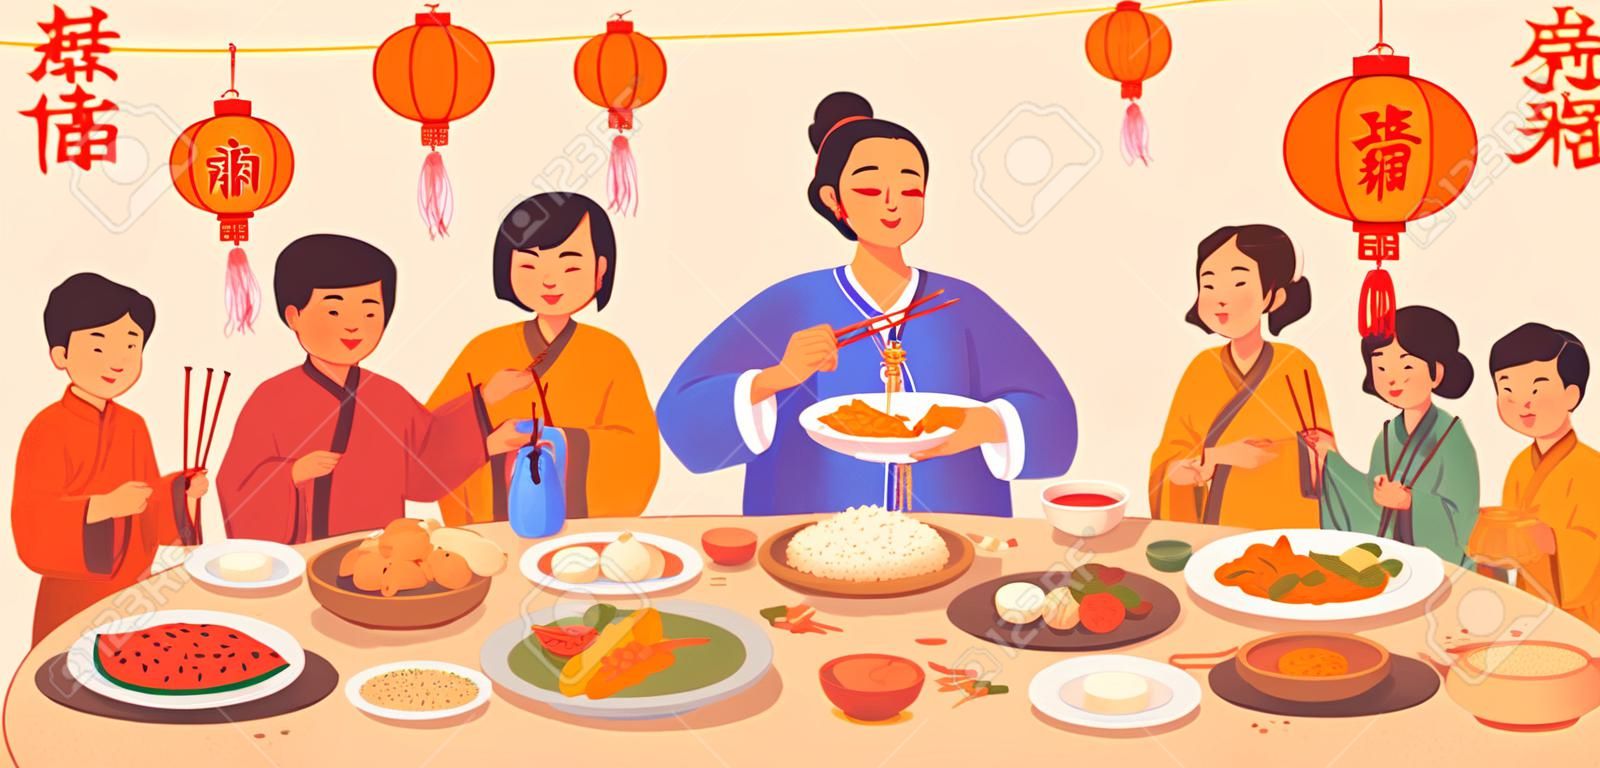 中国の旧正月のテキスト翻訳、皿に食べ物を載せたガラディナー、箸を持った人々の手、赤い提灯の装飾。伝統的な中国料理、魚とご飯、餃子、野菜